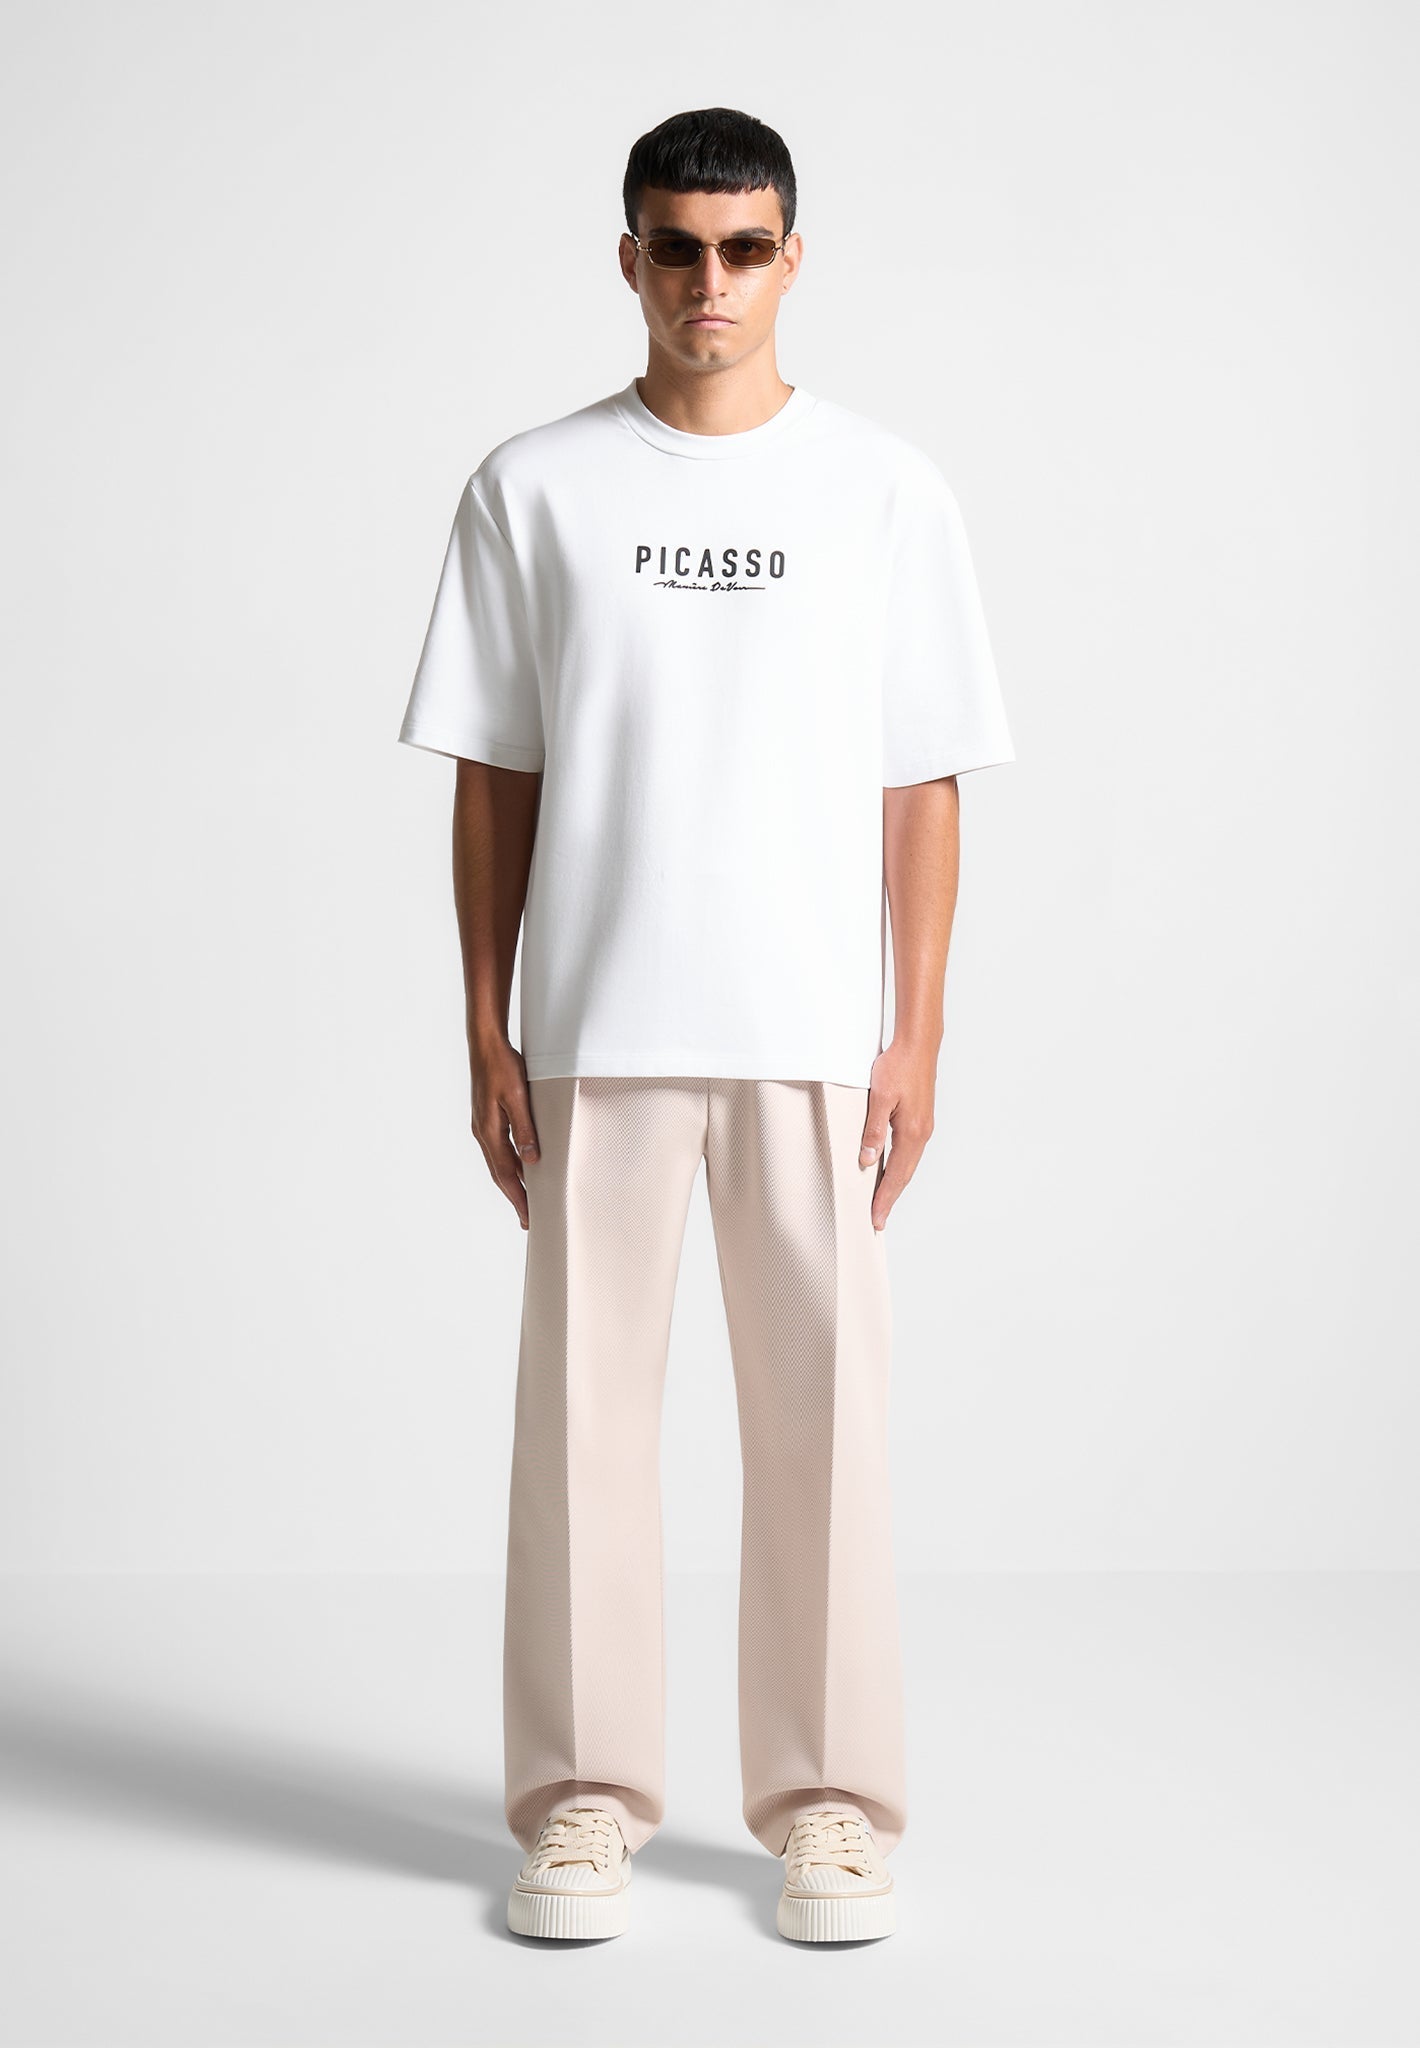 picasso-t-shirt-white